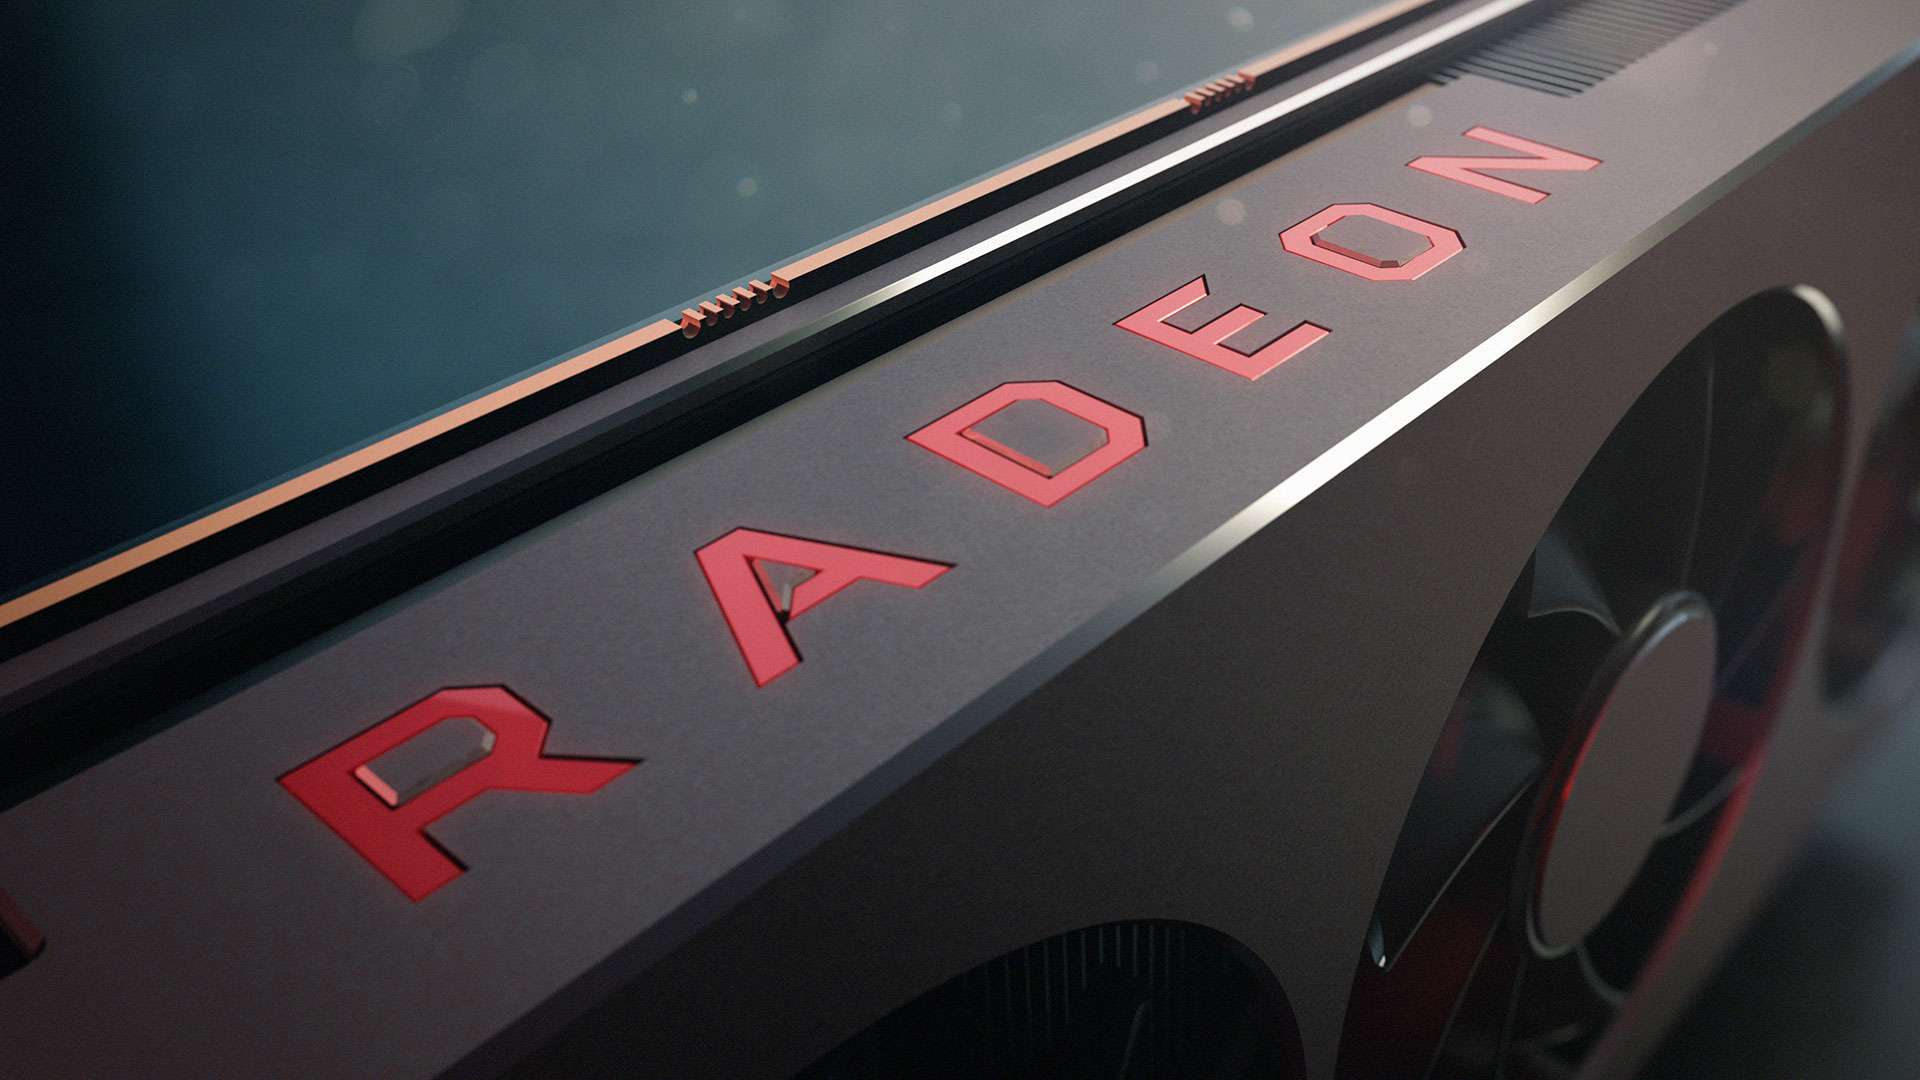 تصاویر و مشخصات کارت Radeon RX 5700 XT فاش شد